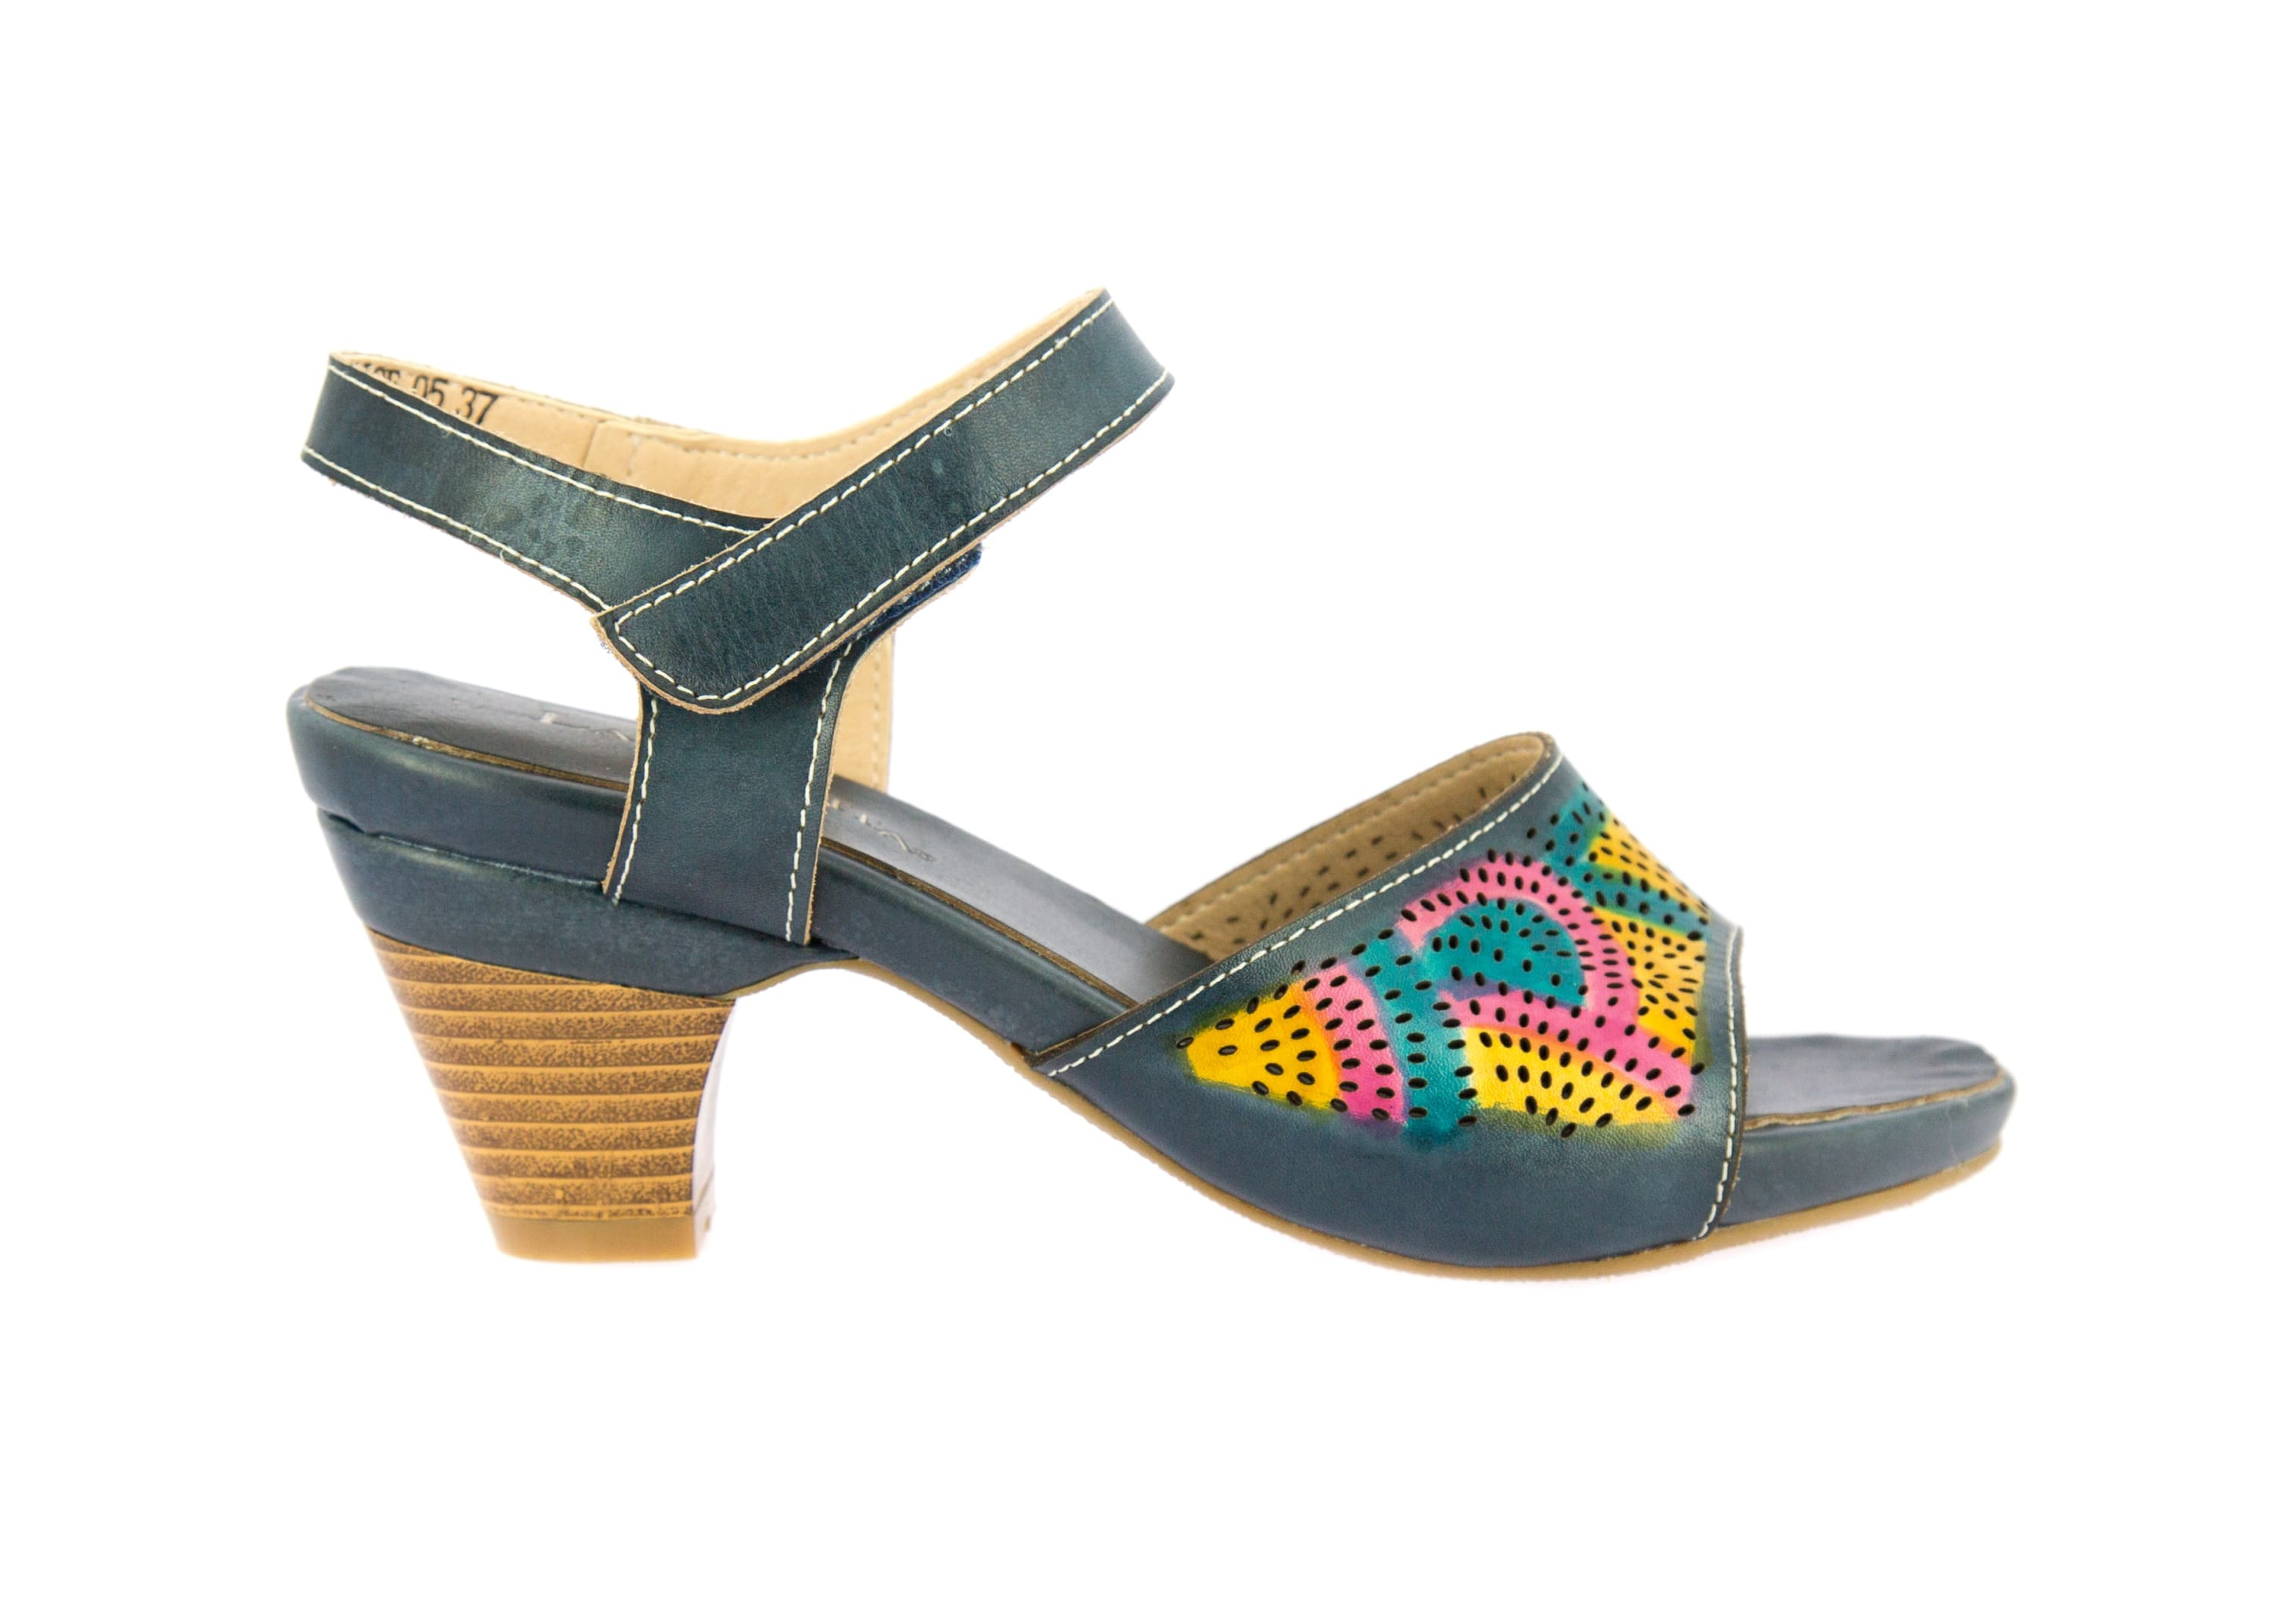 Shoe FRCAISE05 - Sandal